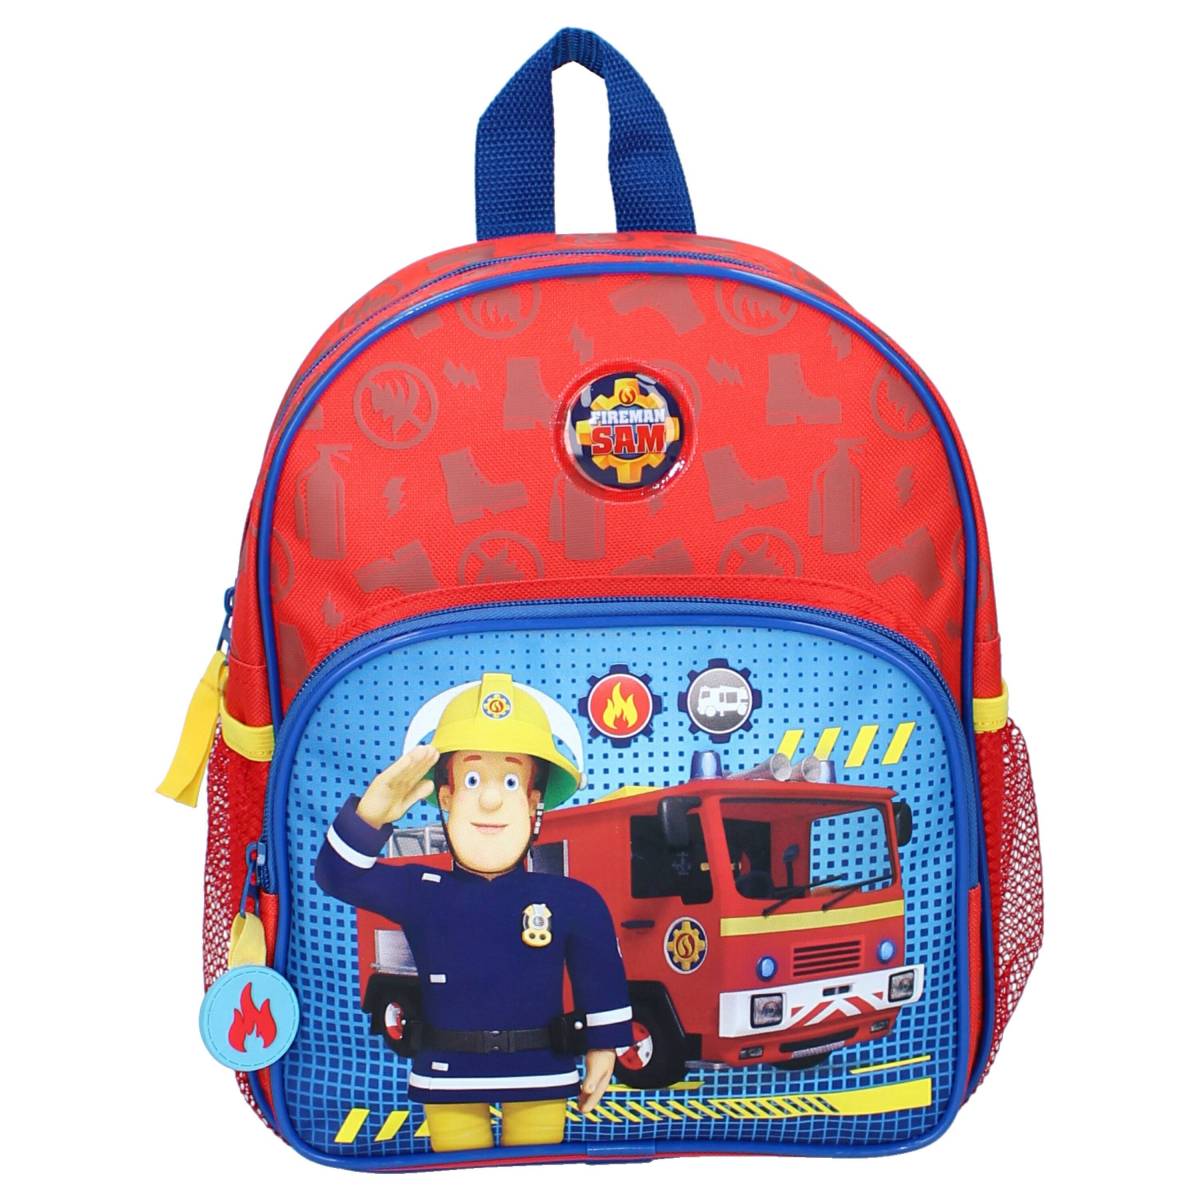 Feuerwehrmann Sam Fireman Sam Kinder Rucksack 30cm kids bag Backpack NEU NEW 